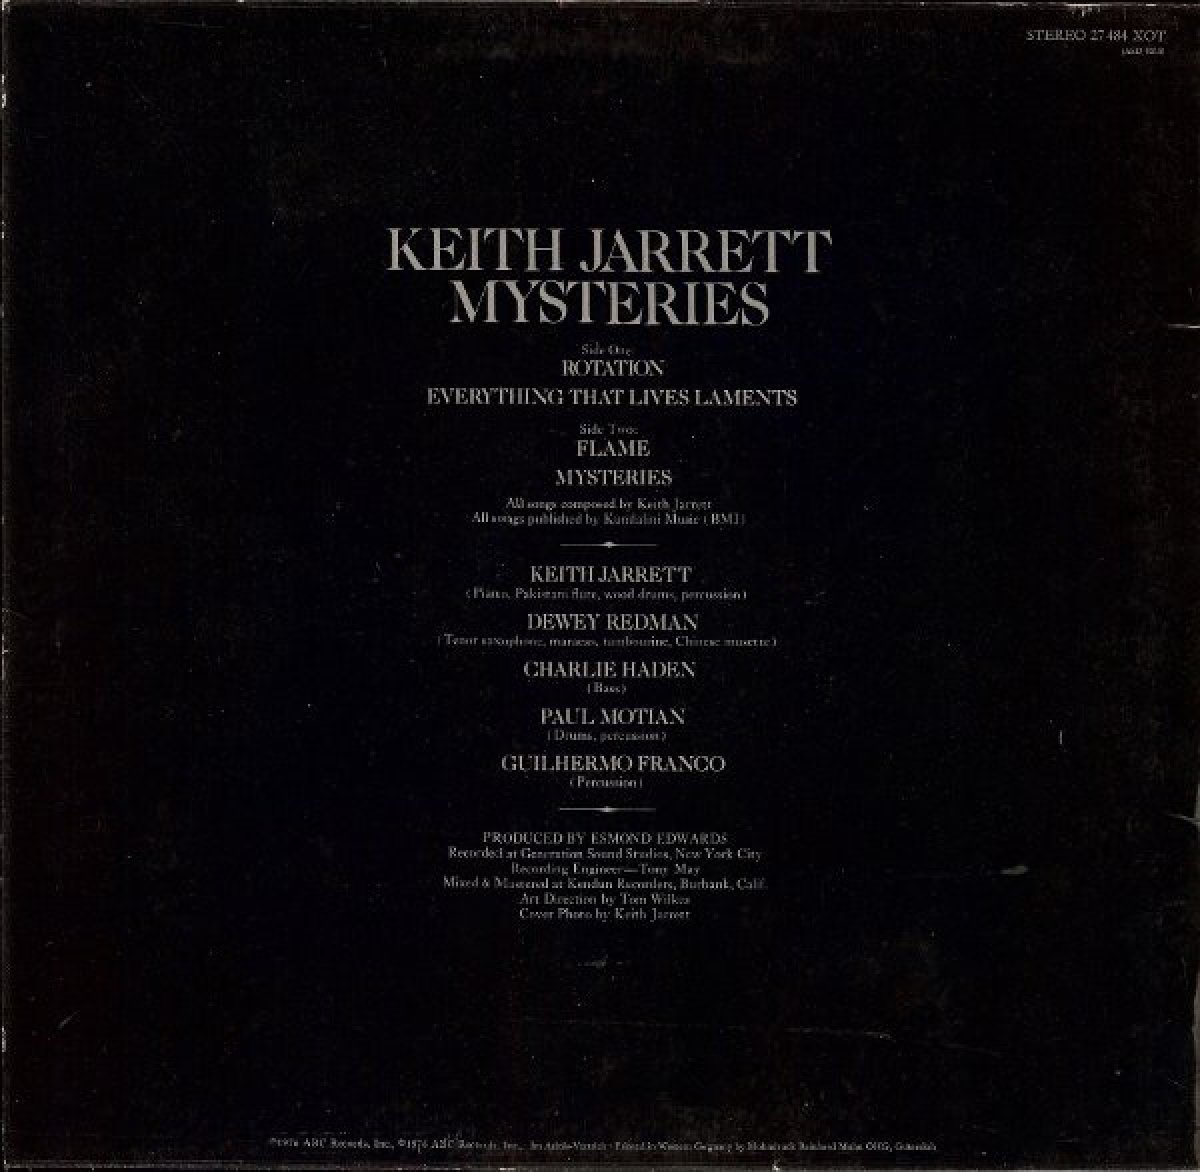 Keith Jarrett "Mysteries"